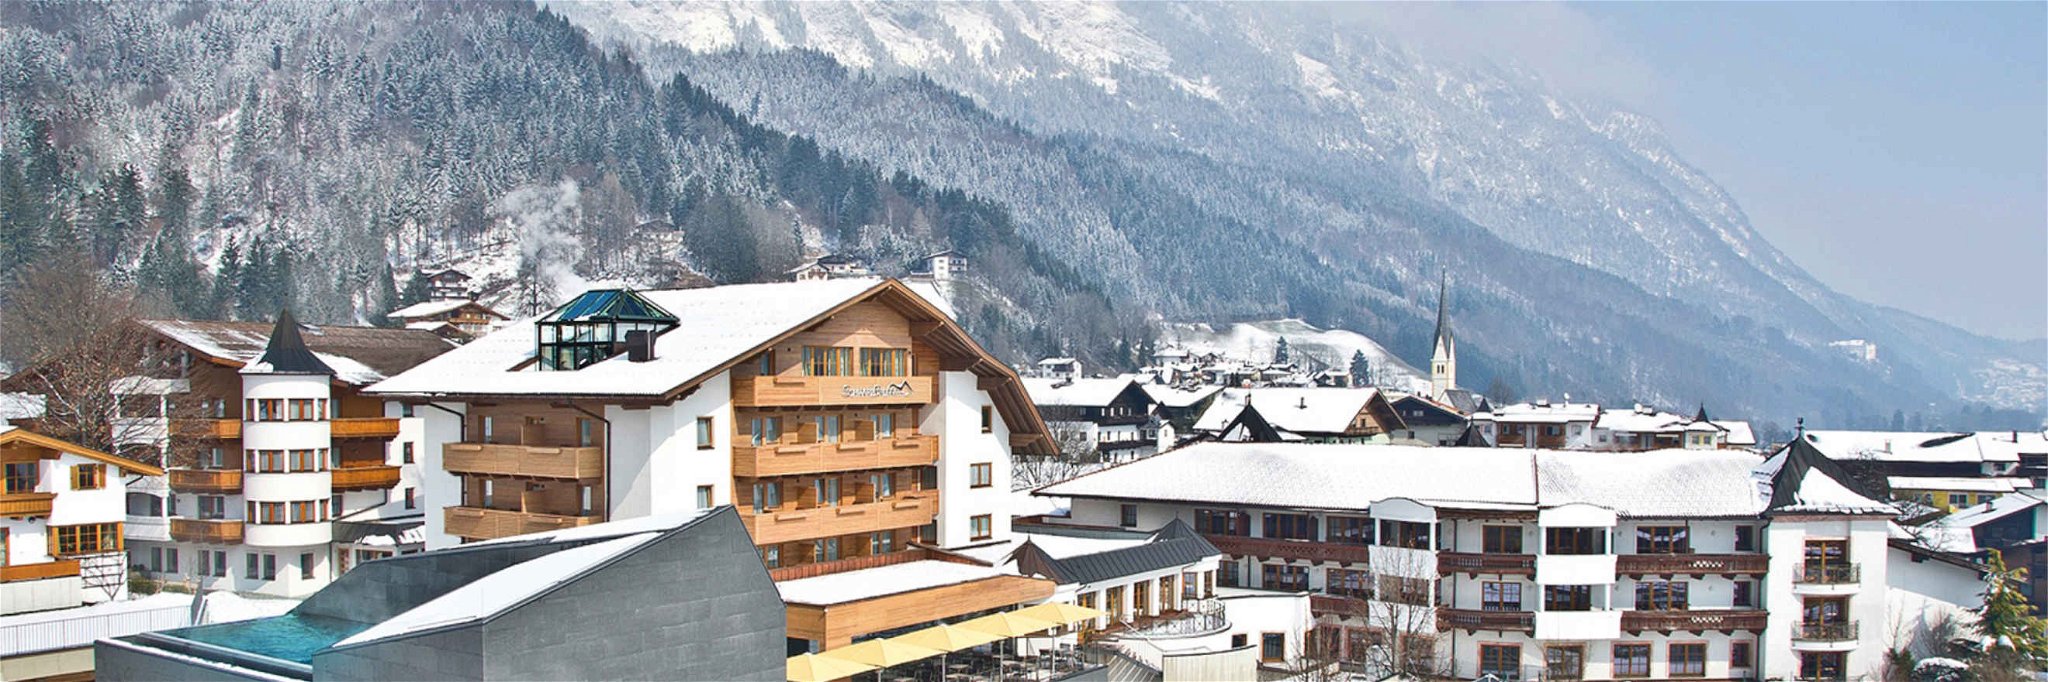 Das Hotel »Schwarzbrunn« liegt in der Silberregion Karwendel.